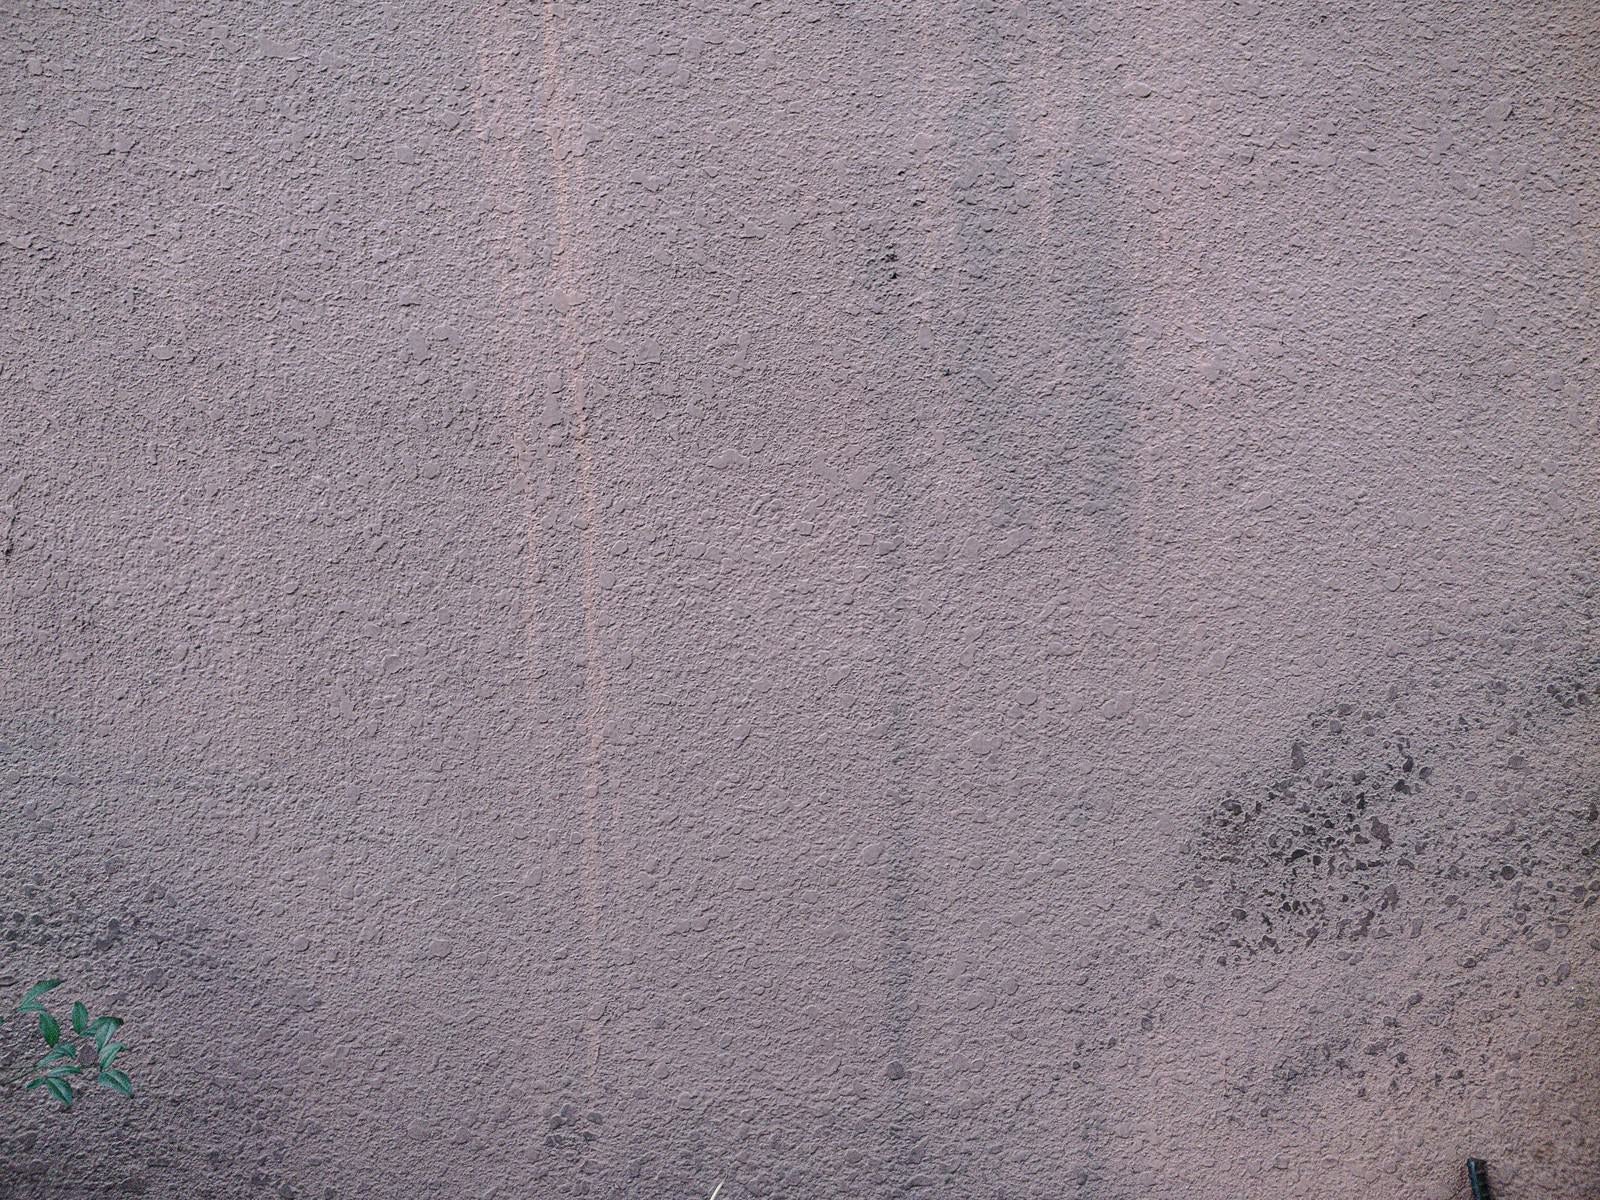 「黒ずんだモルタル壁のテクスチャー」の写真